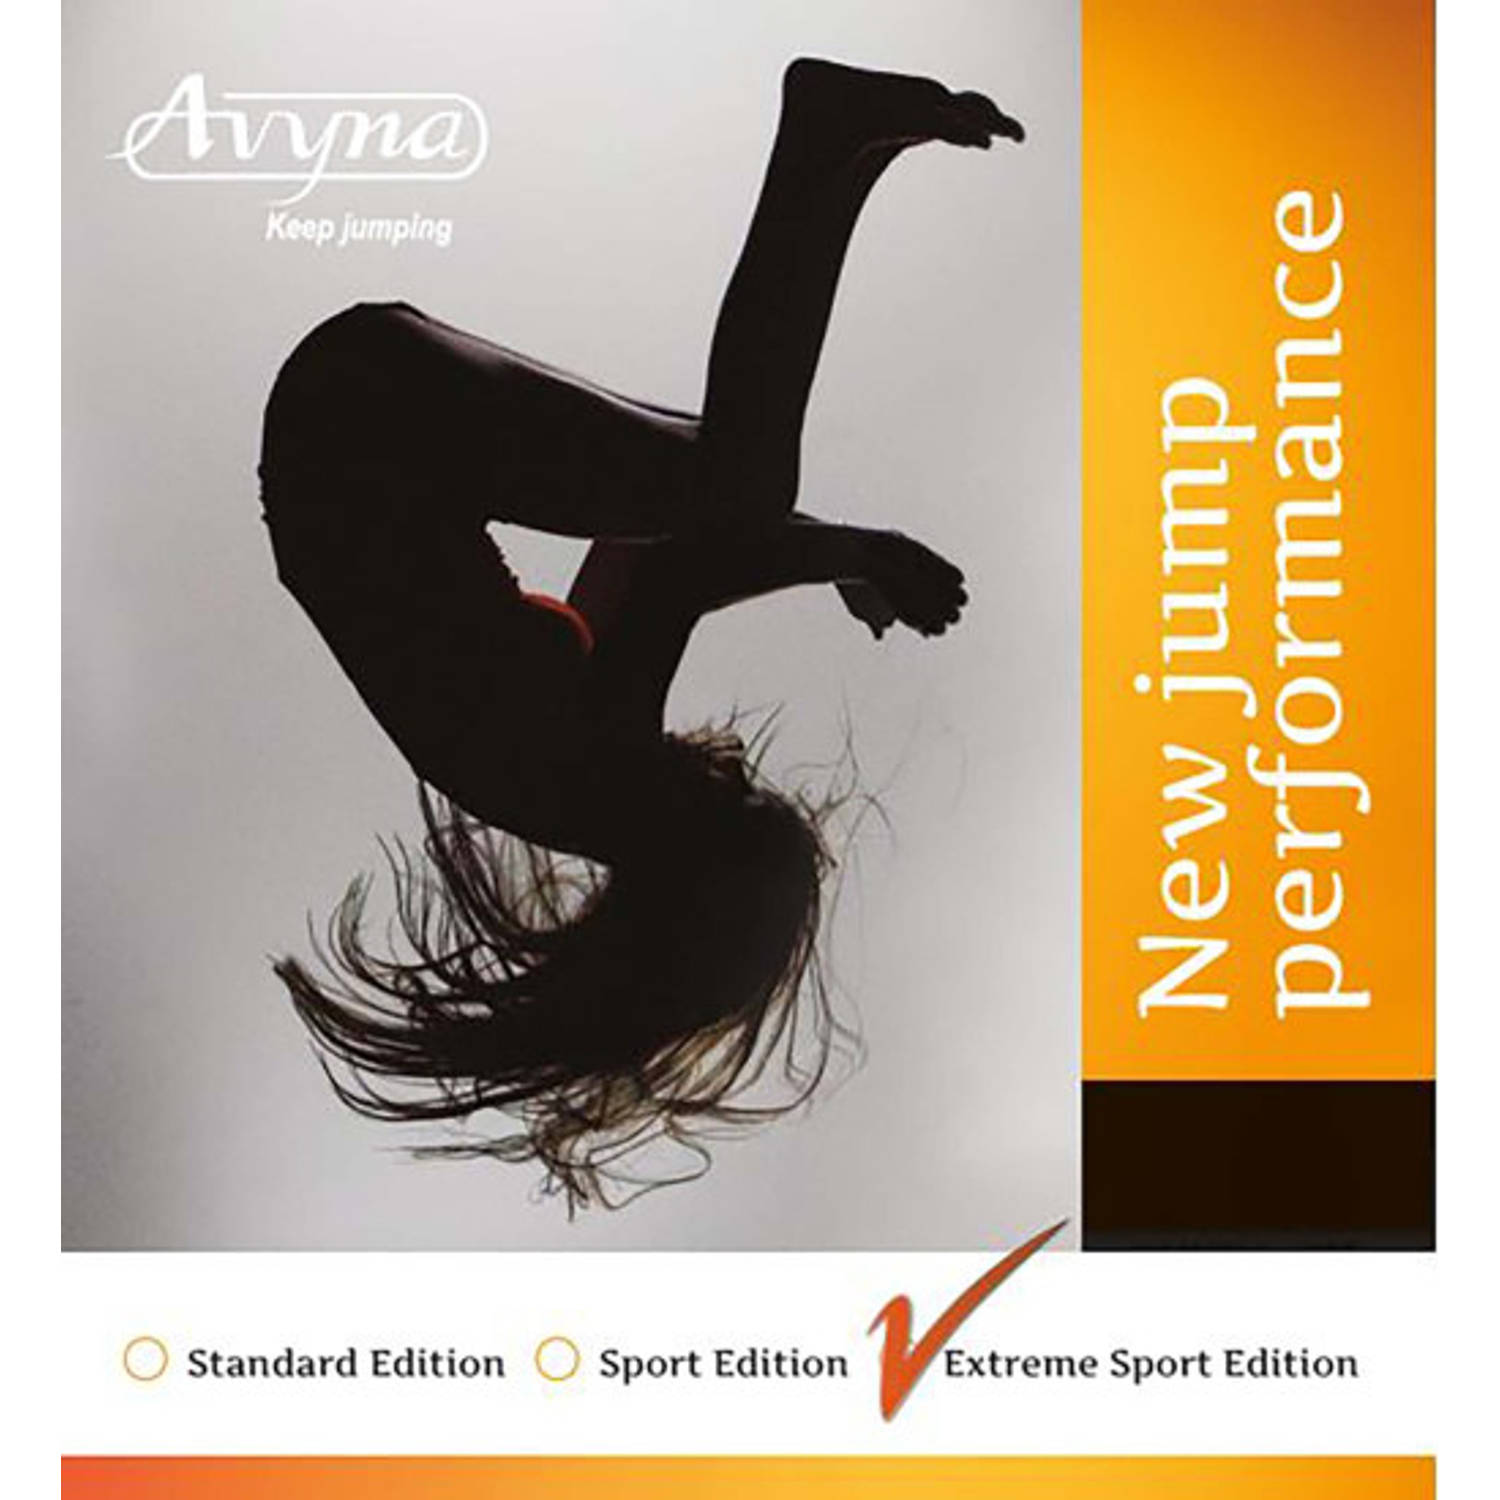 Avyna Veer tbv TEPL-12/14, 21.5cm Extreme Sport, 32* (AVSP-14-ES)